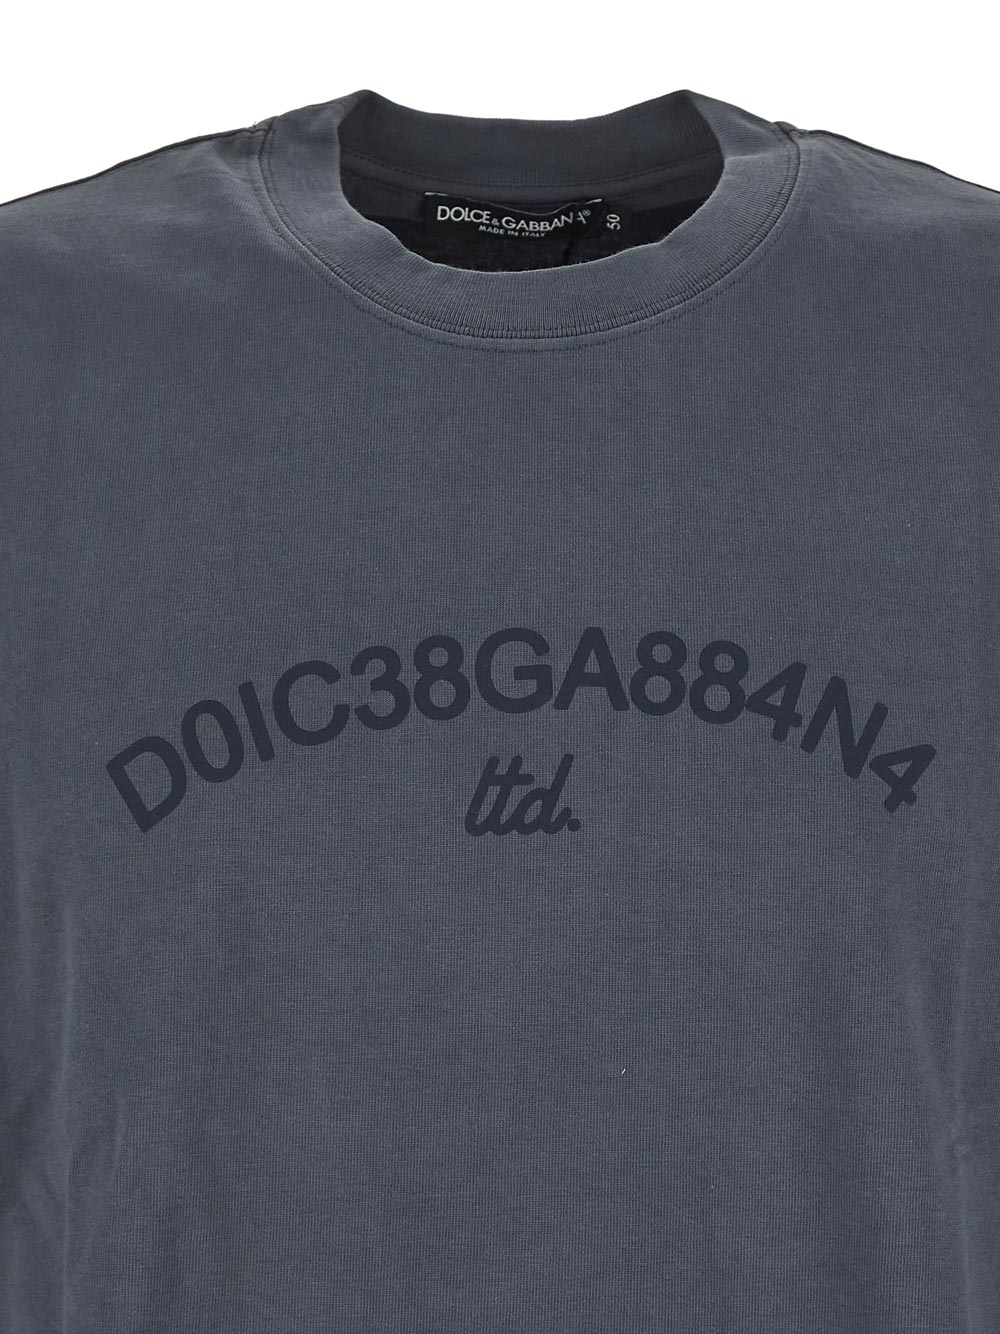 Dolce & Gabbana Cotton T-Shirt With Dolce&Gabbana Logo